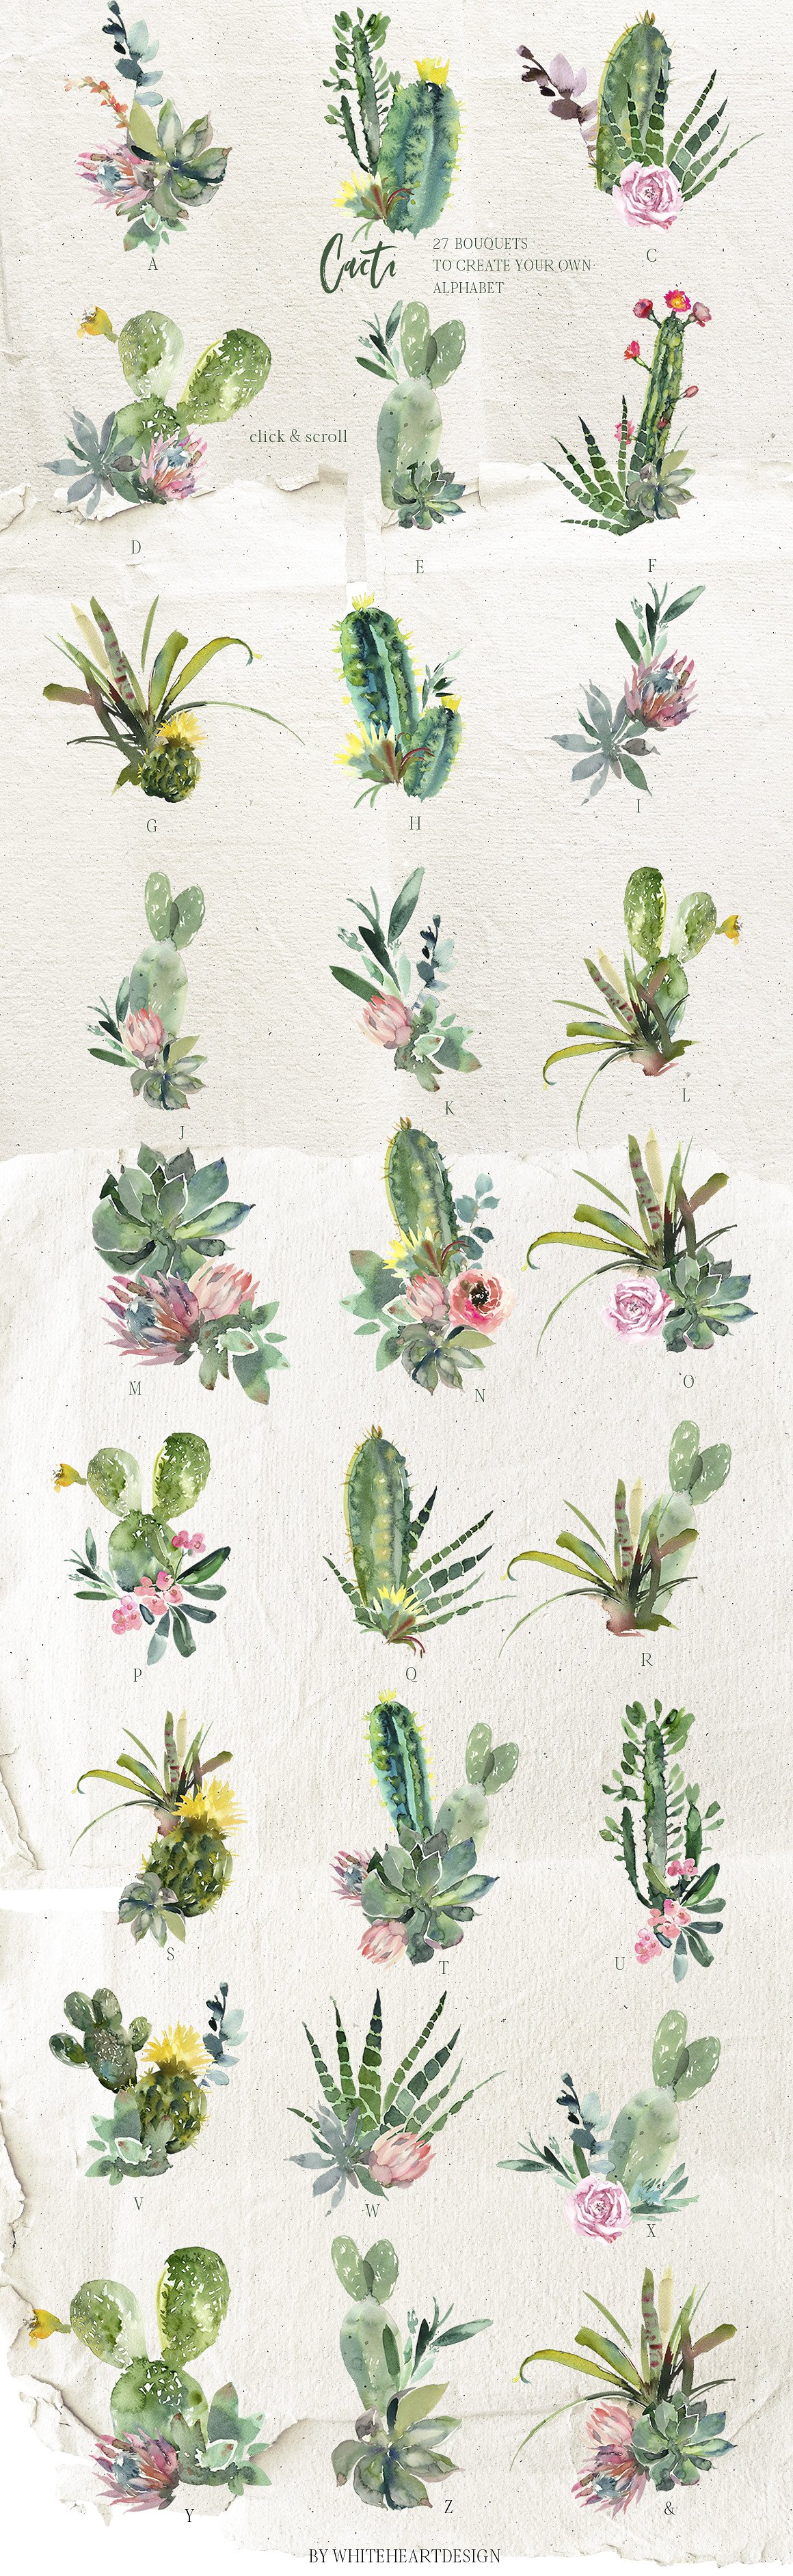 仙人掌水彩剪贴画 Cacti Watercolor Cactuses Clipart插图(6)